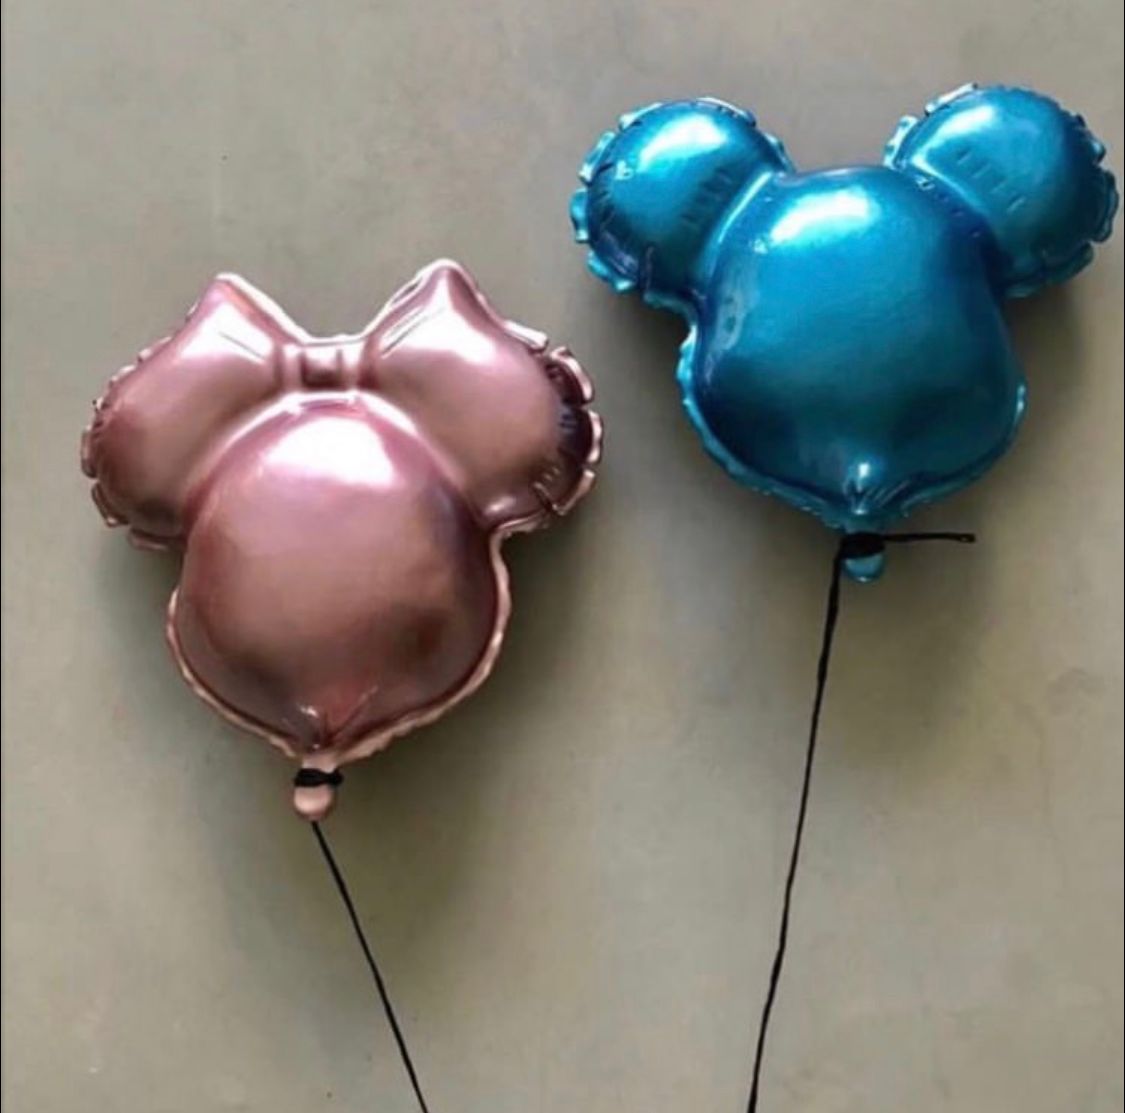 Mickey Metallic Blue Balloon Sculpture